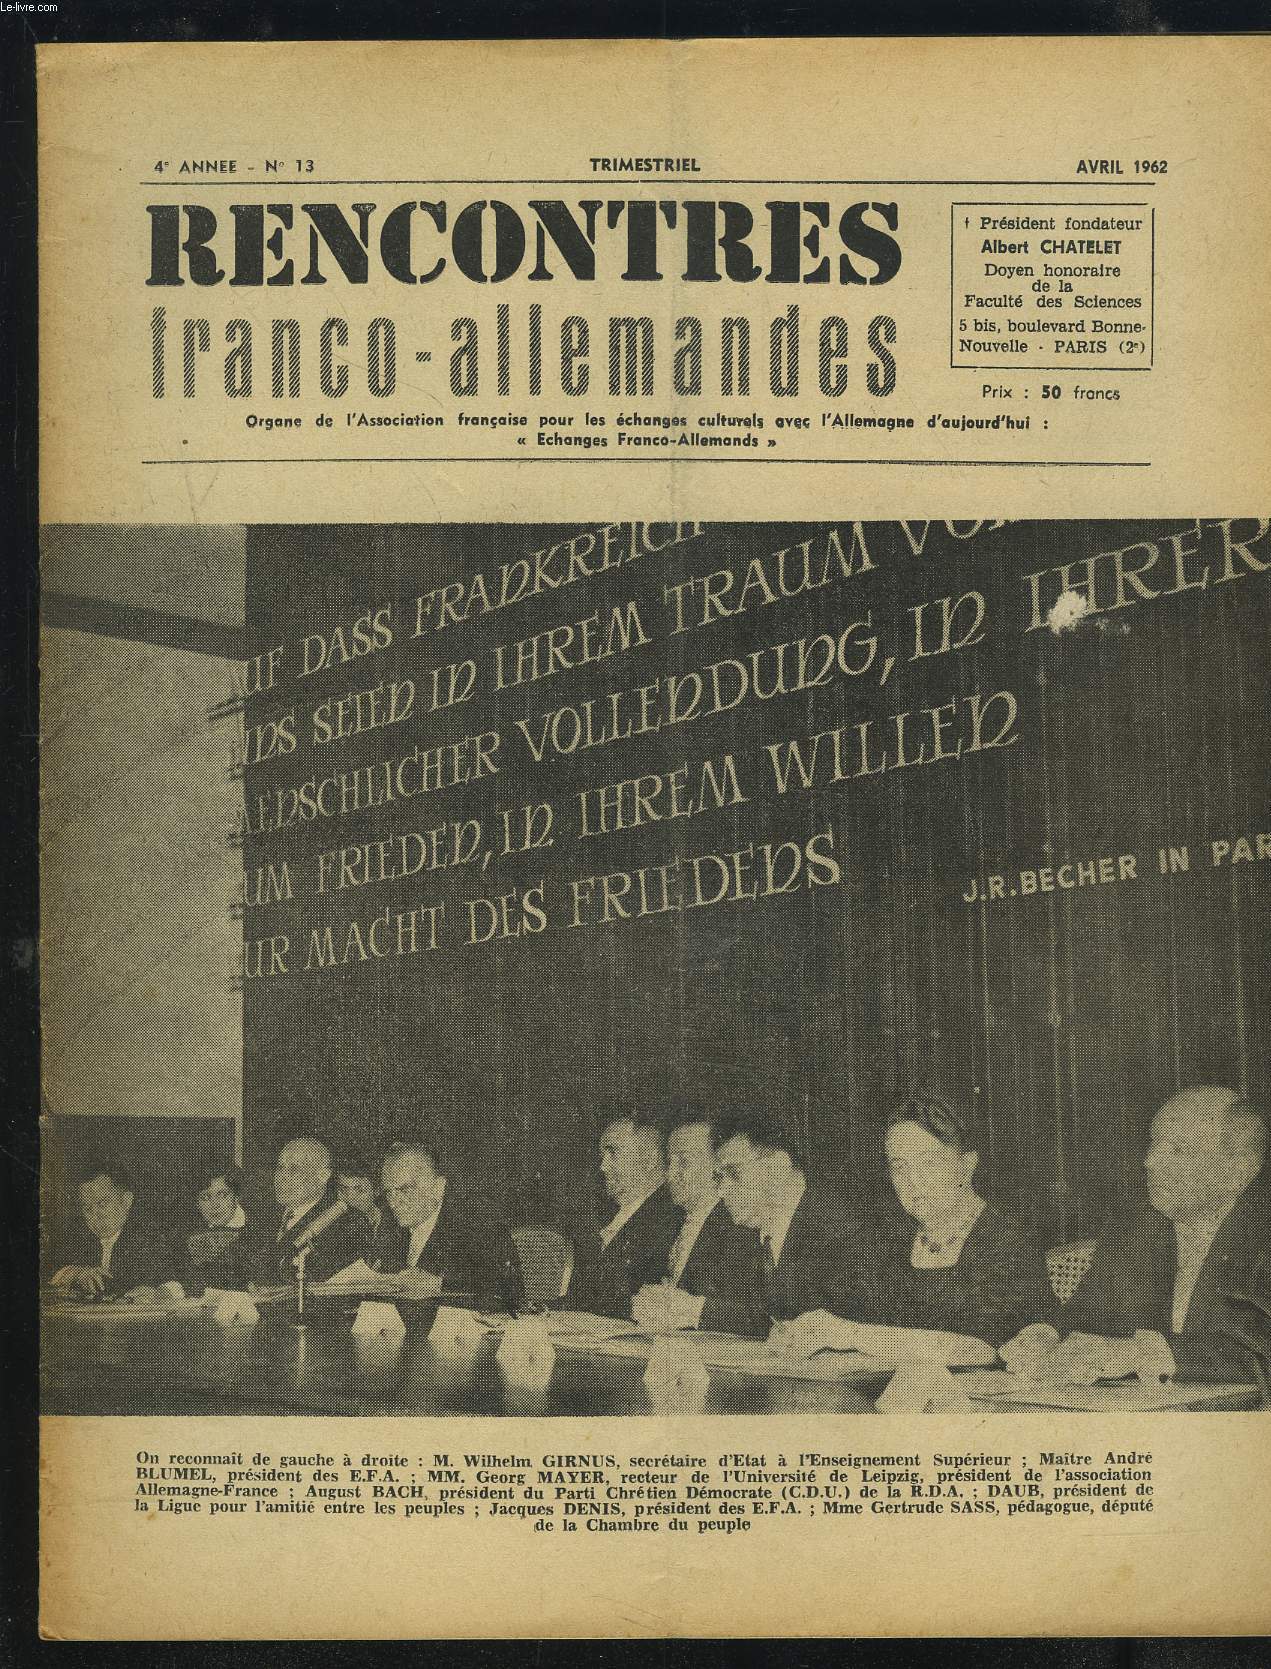 RENCONTRES FRANCO-ALLEMANDES - N13 / 4 ANNEE AVRIL 1962 : CREATION DE L'ASSOCIATION ALLEMAGNE-FRANCE EN R.D.A. + COMPTE RENDU DE M. ROLAND LENOIR + RAPPORT DU PROFESSEUR GEORG MAYER...ETC.